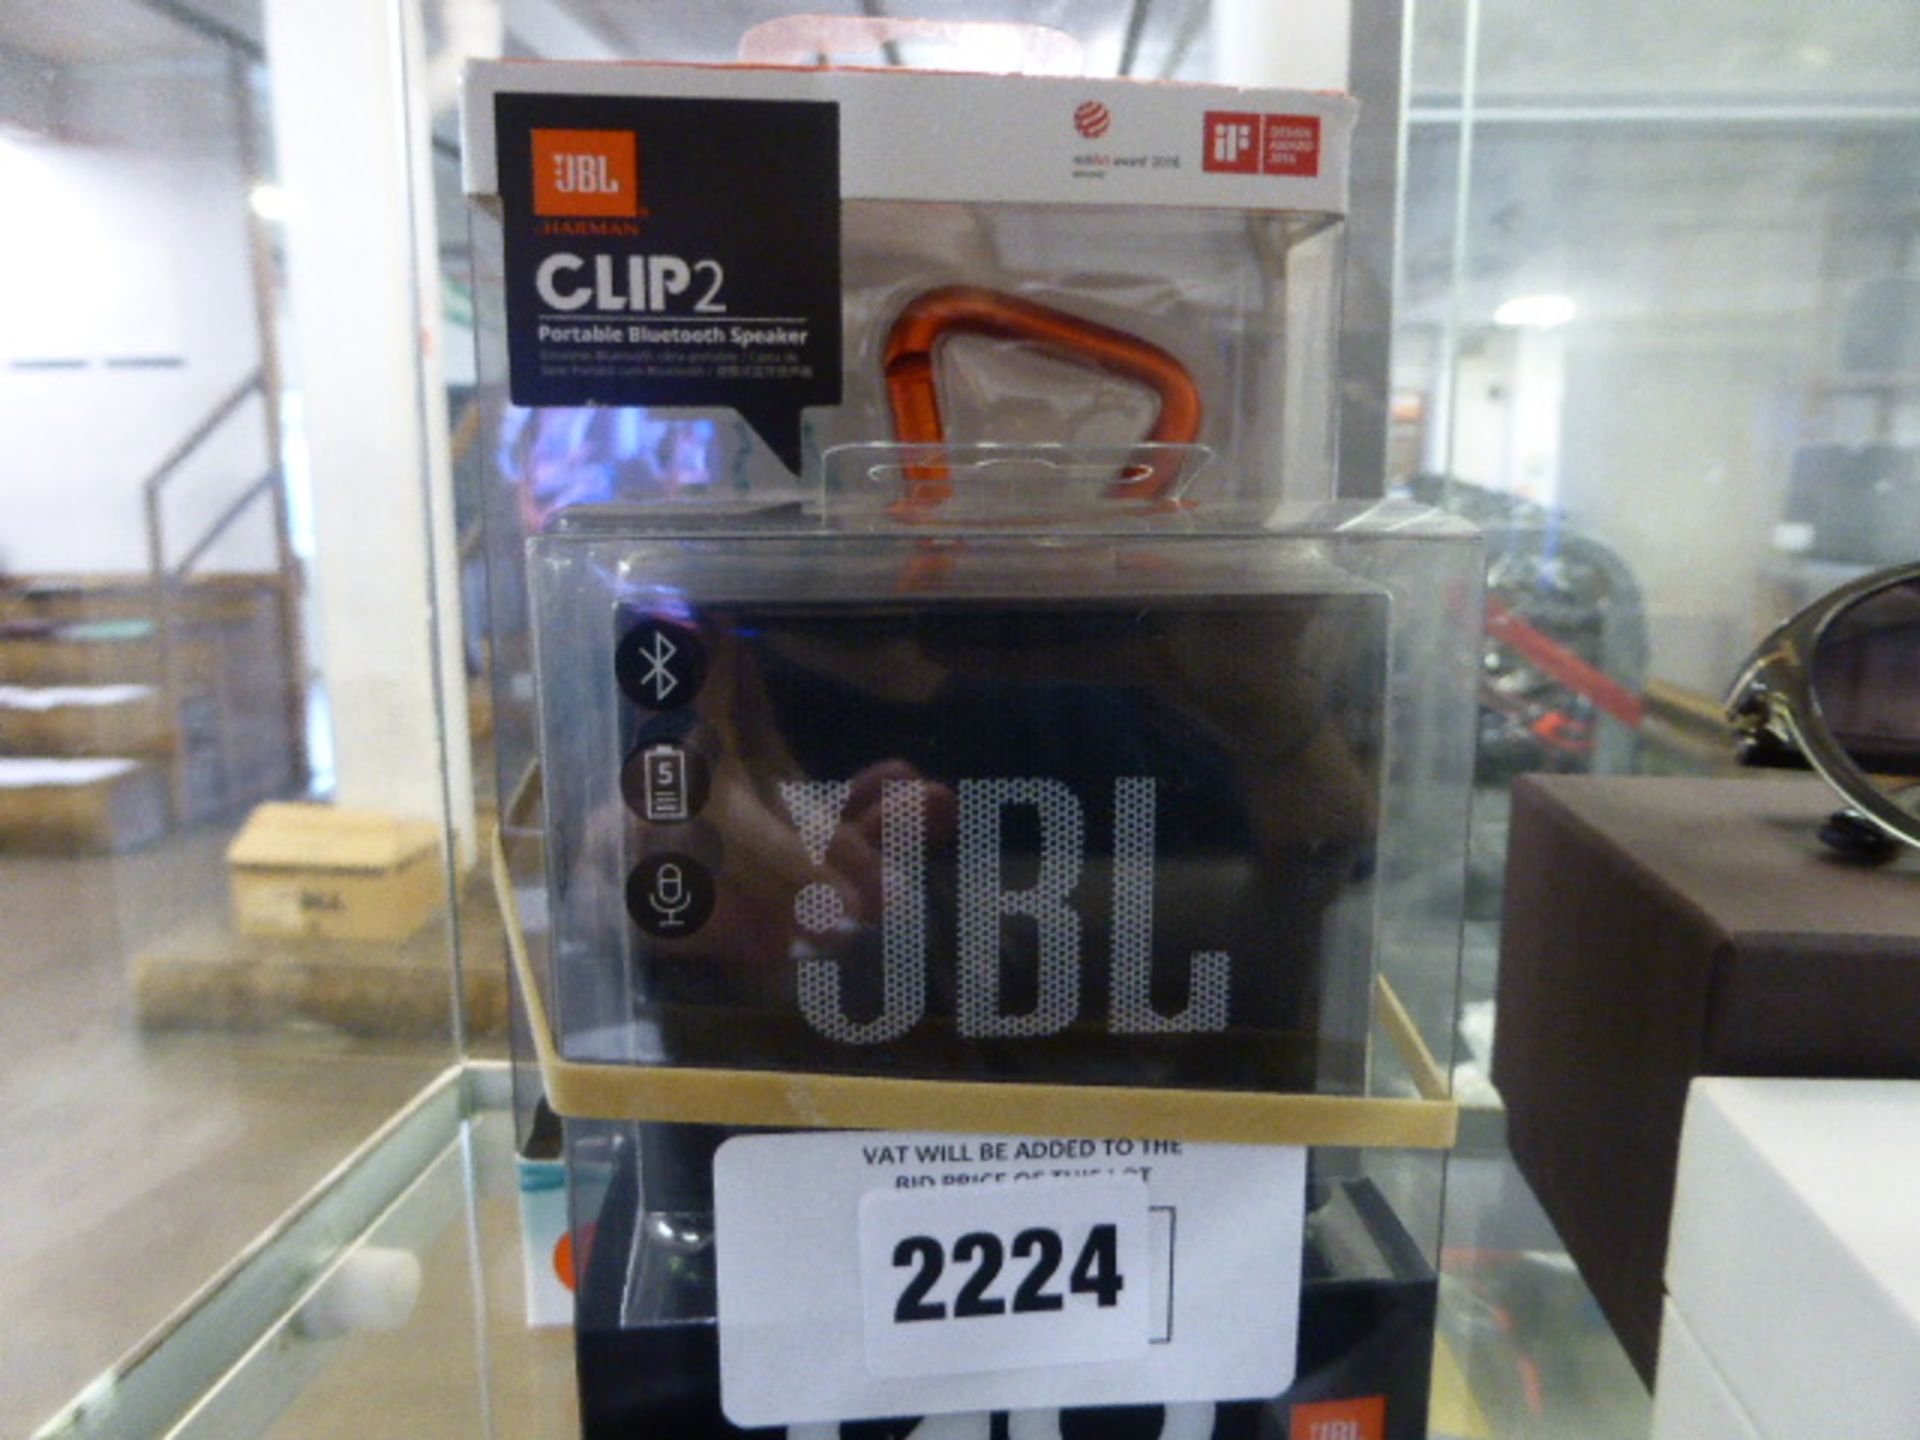 2278 JBL Go portable speaker together with a JBL clip-to speaker